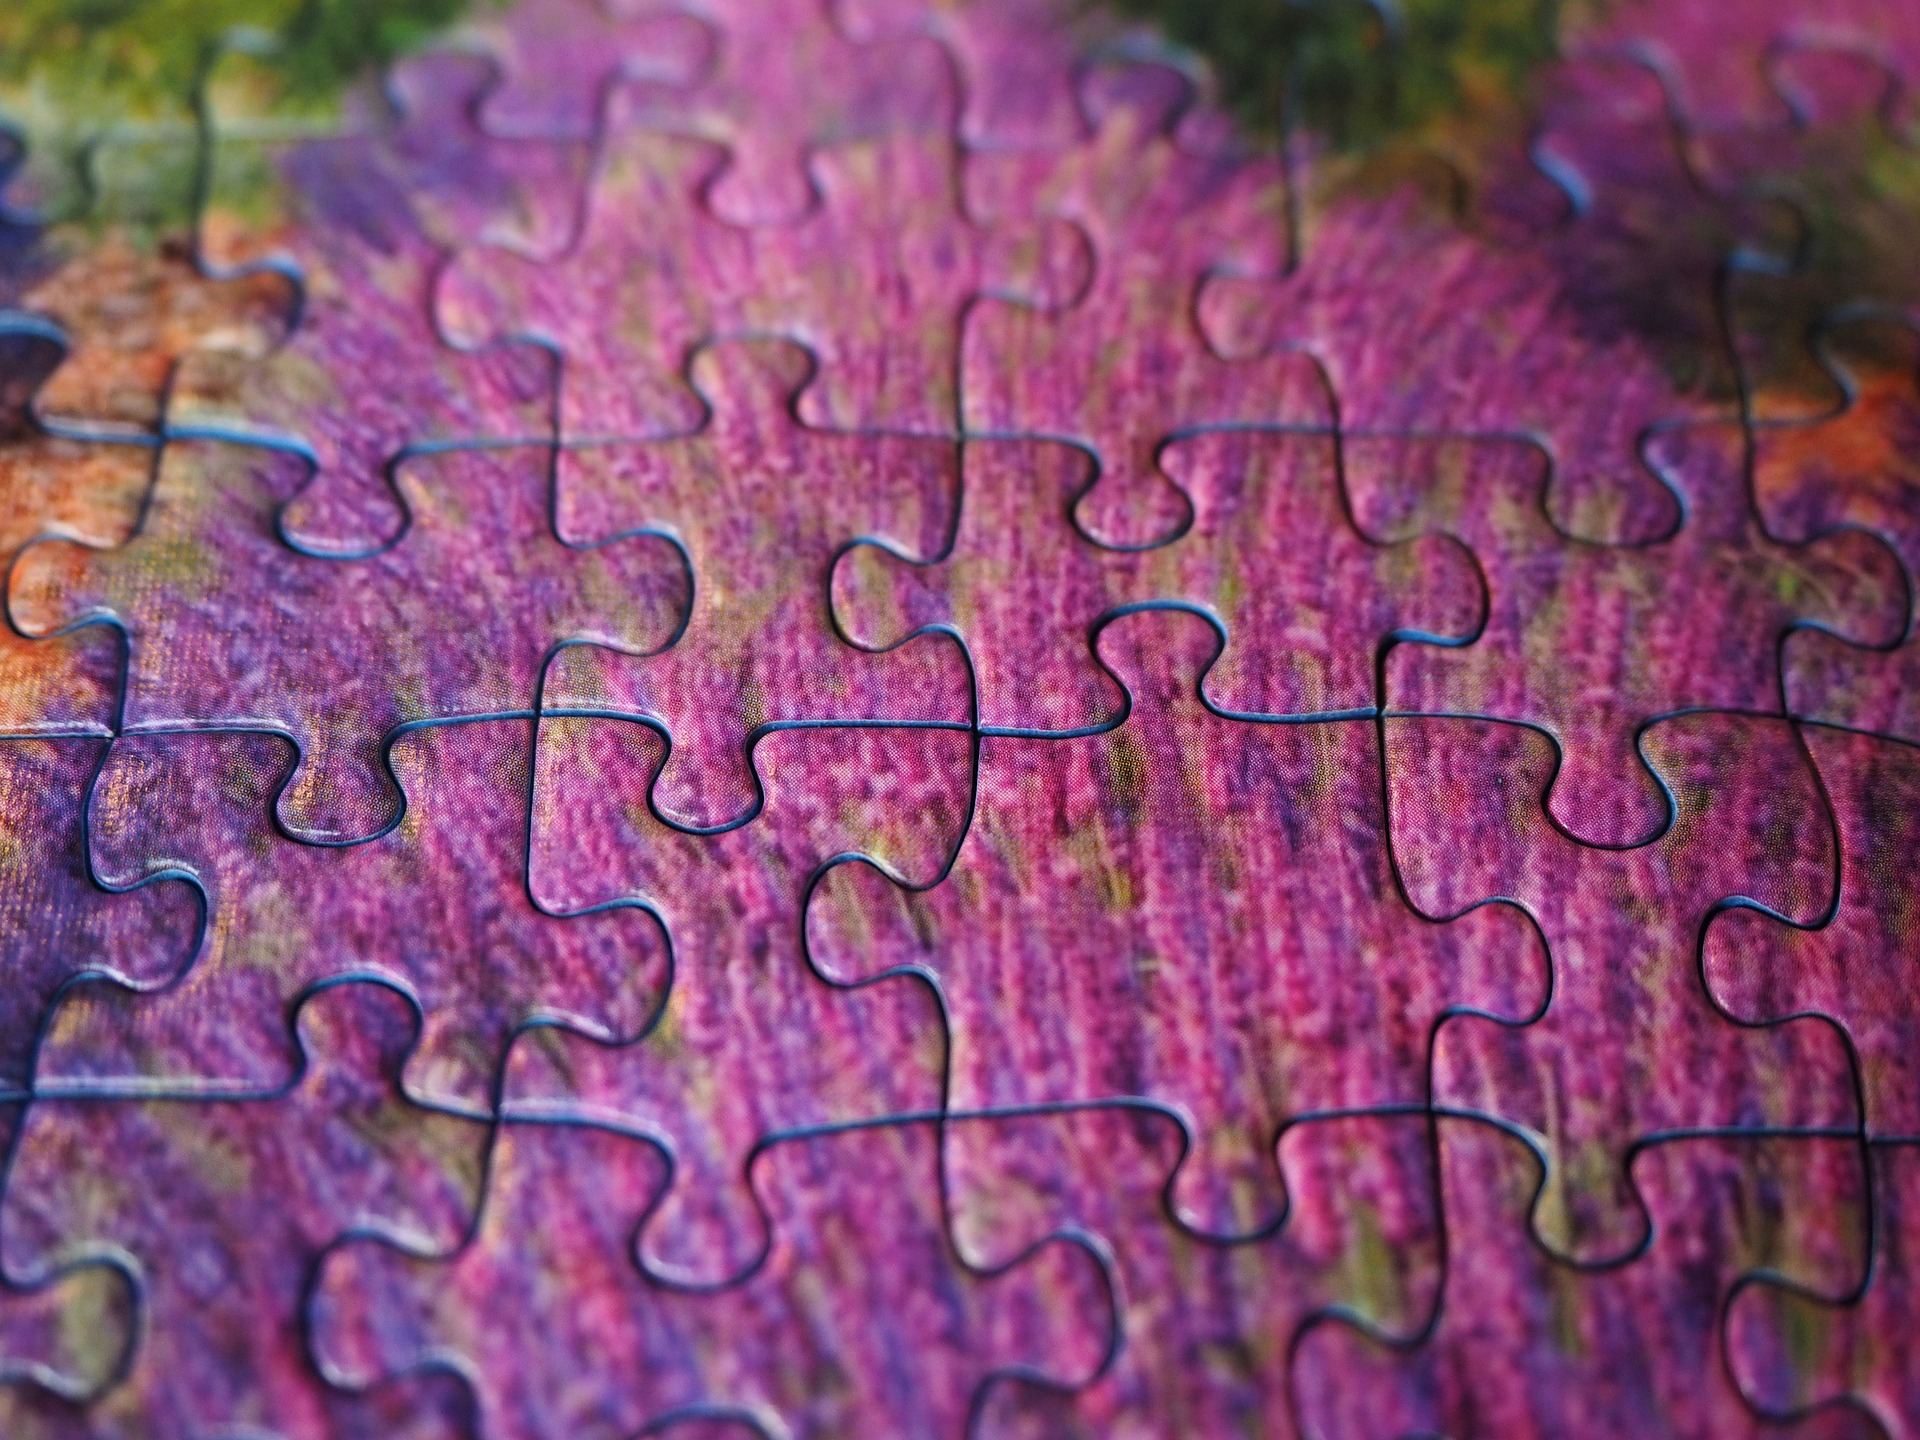 puzzle-pieces-g61d90cb5a_1920